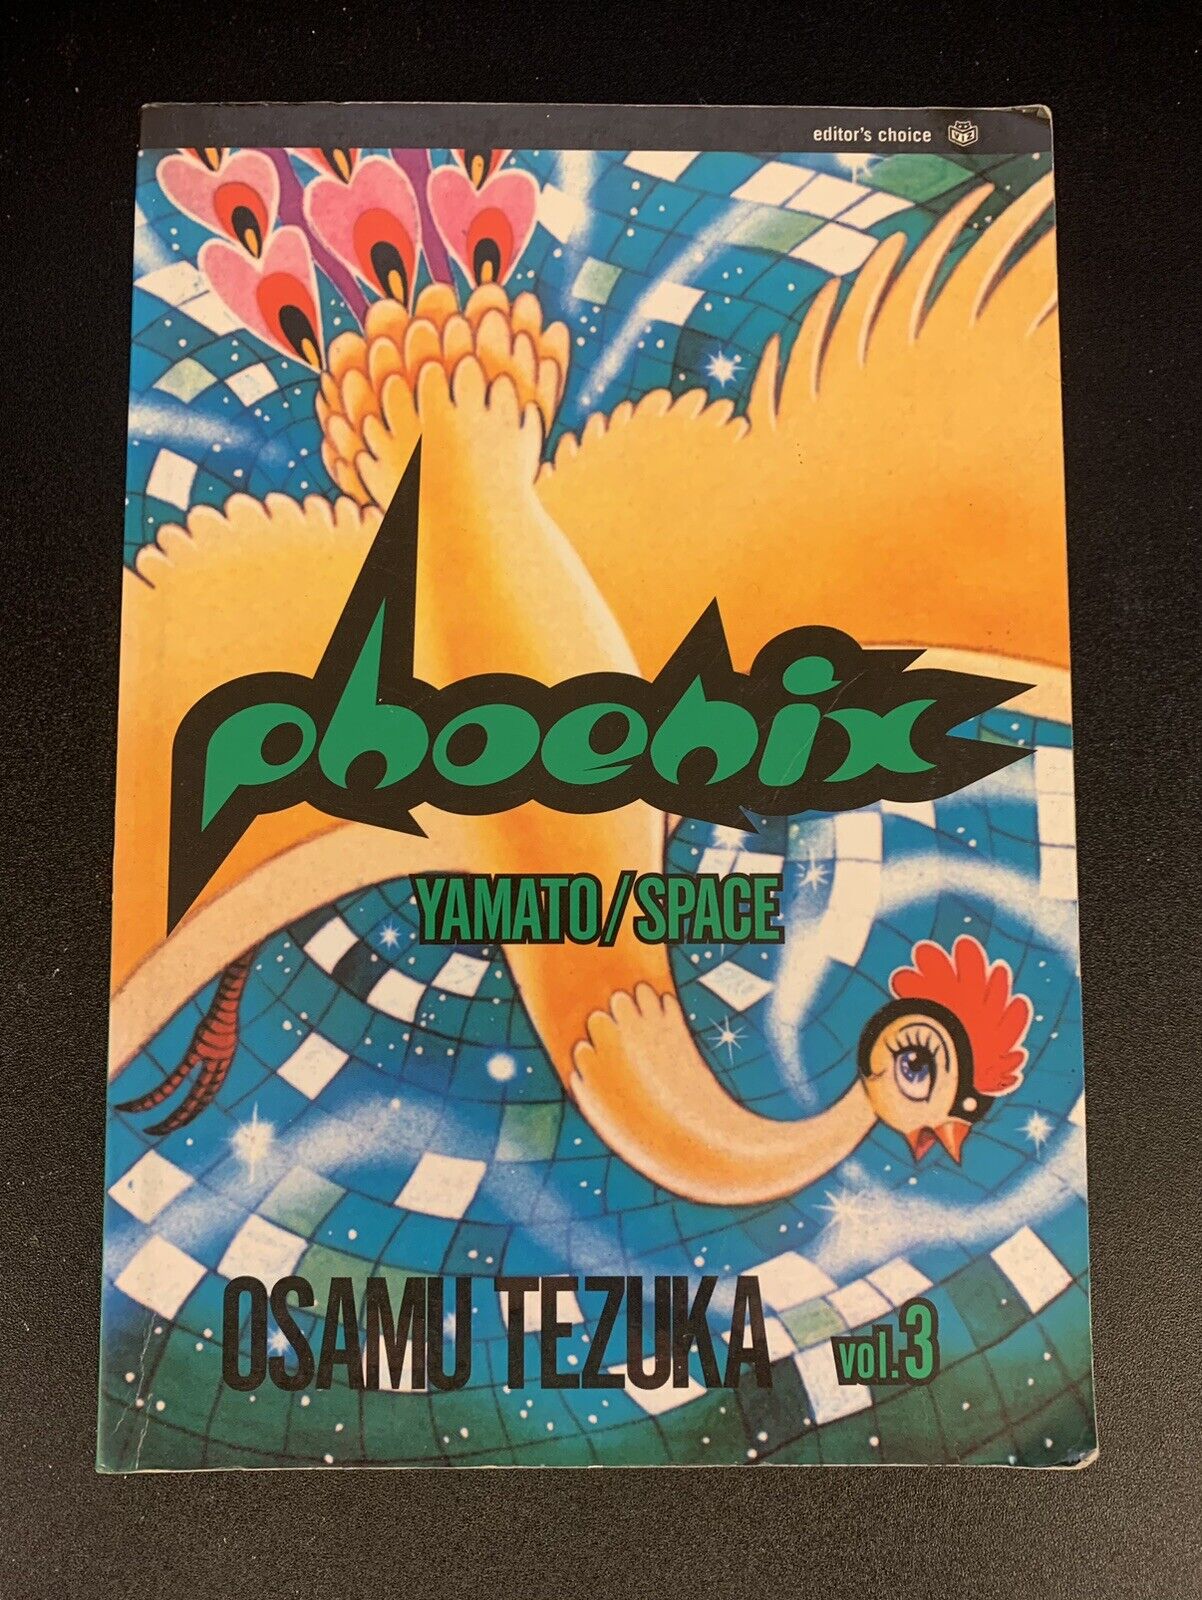 Phoenix Vol 3 Yamato/Space - English Viz First Printing - Osamu Tezuka - Good